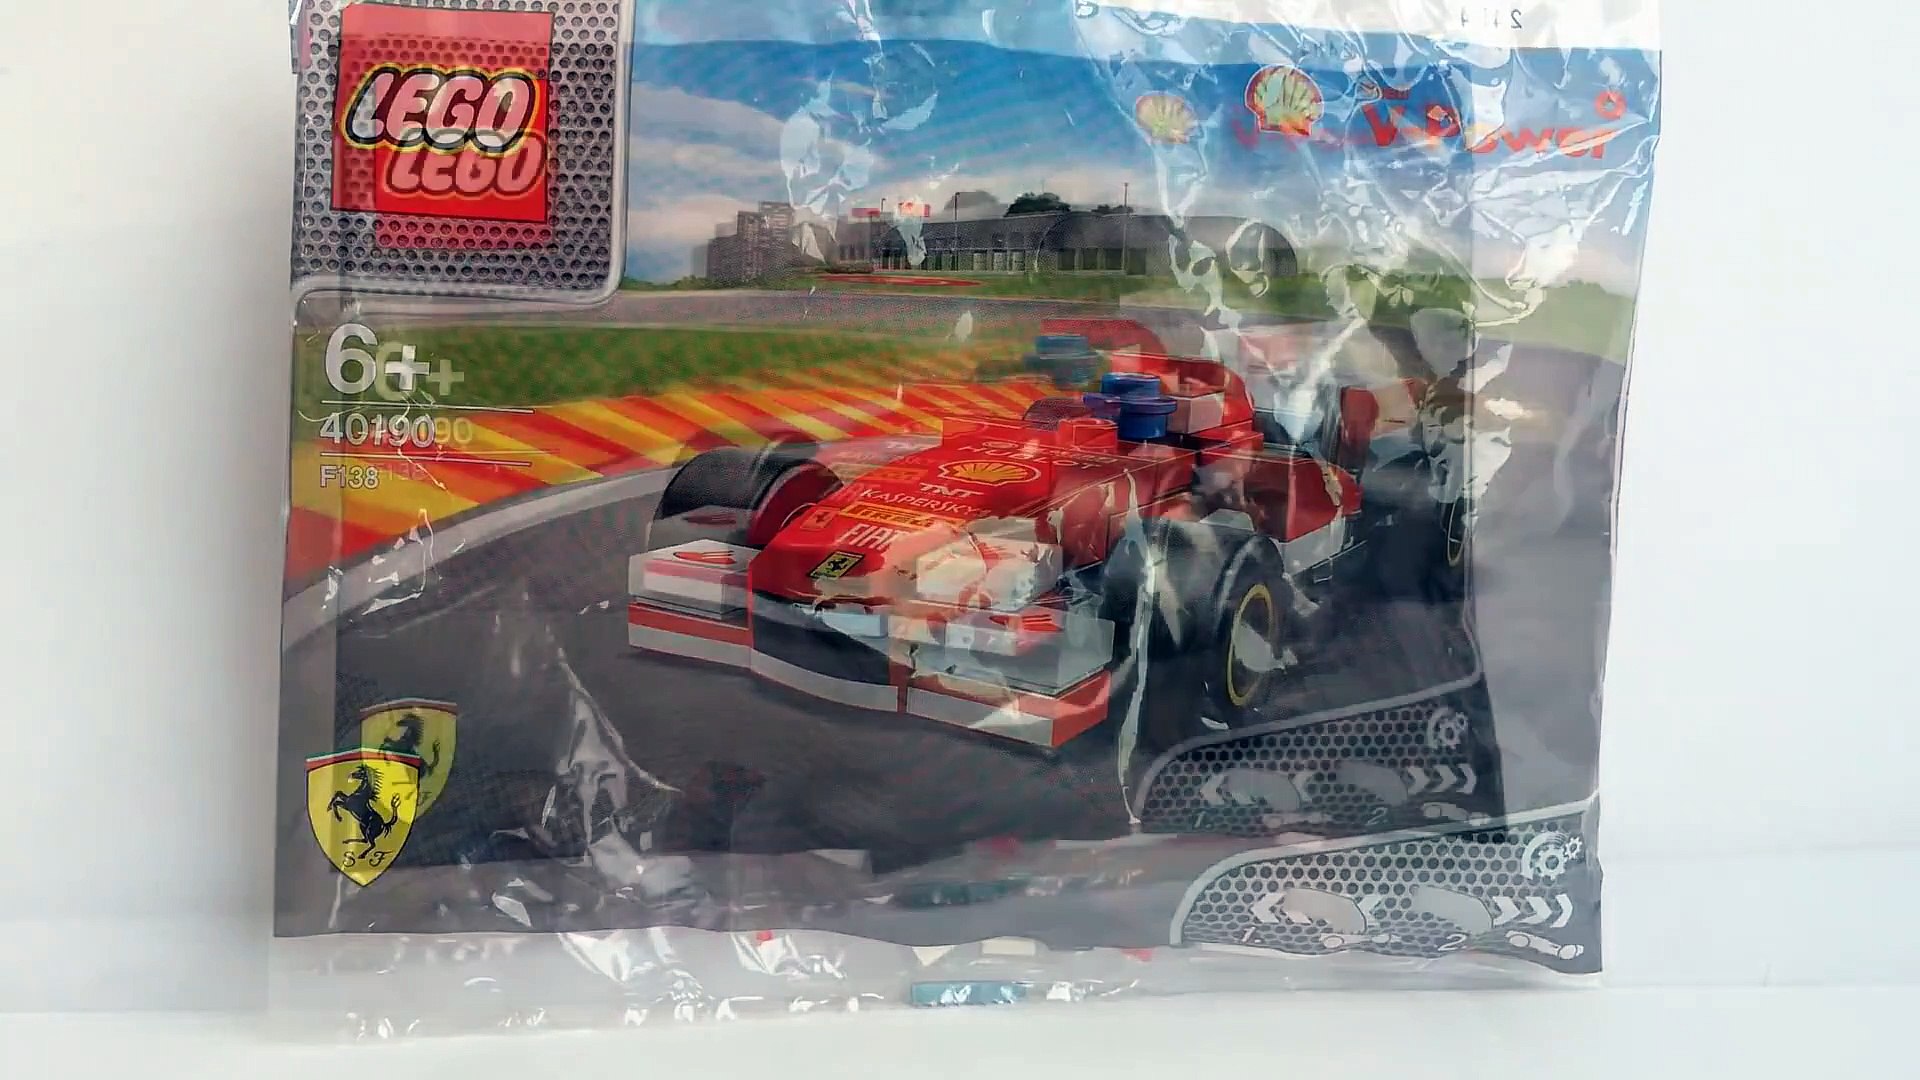 boykot Tilbagekaldelse inerti Lego Shell Ferrari F138 2014 V Power Collection 40190 - Unboxing Demo  Review - video Dailymotion